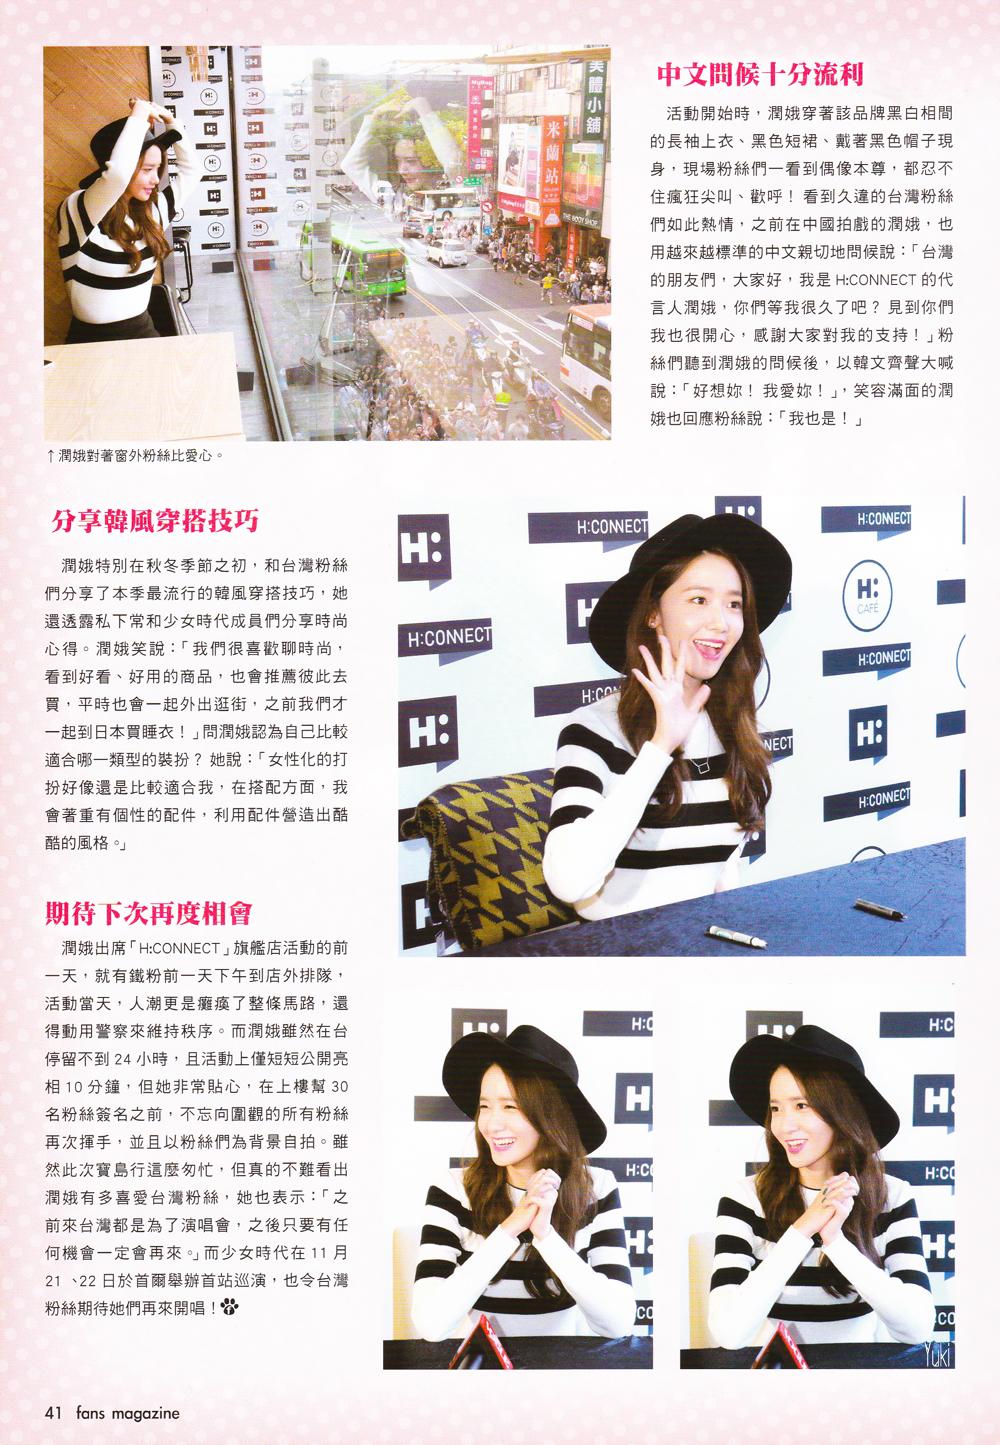 [PIC][31-10-2015]YoonA khởi hành đi Đài Loan để tham dự Fansign cho thương hiệu "H:CONNECT" vào sáng nay - Page 6 27518A335677C0D131DB5B